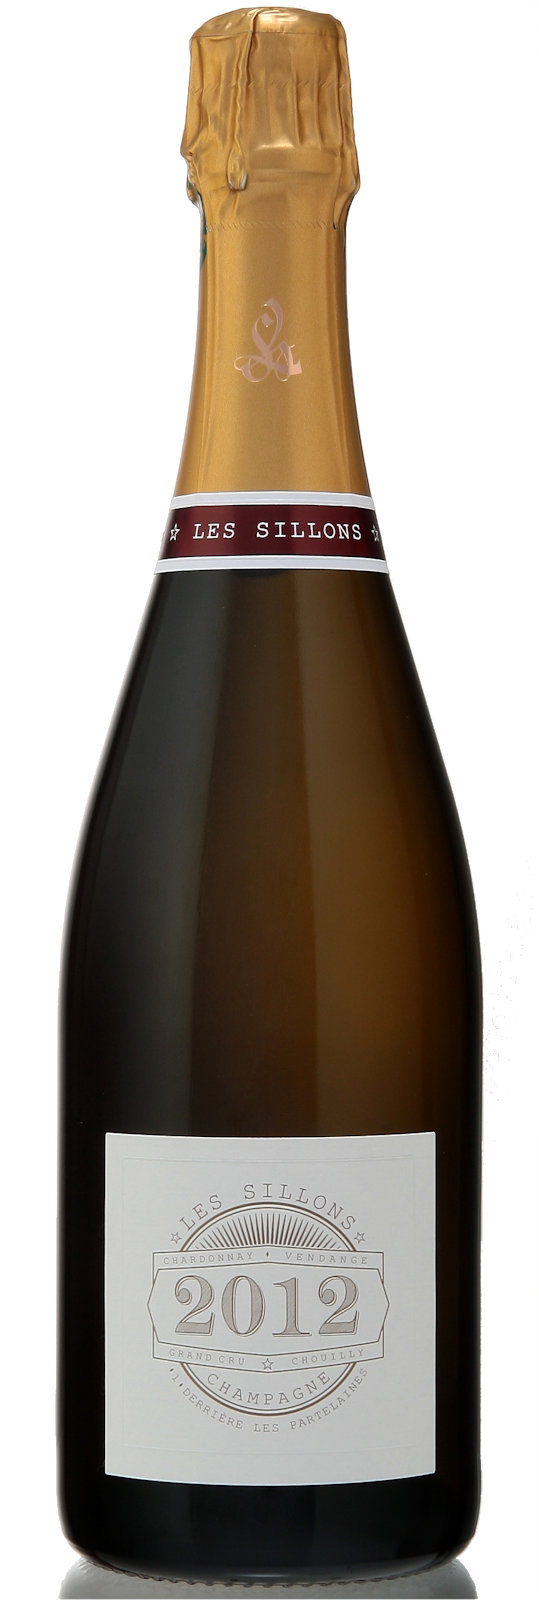 Legras & Haas Millesimé 2012 Cuvée Parcellaire "Les Sillons", Jahrgangs-Champagner